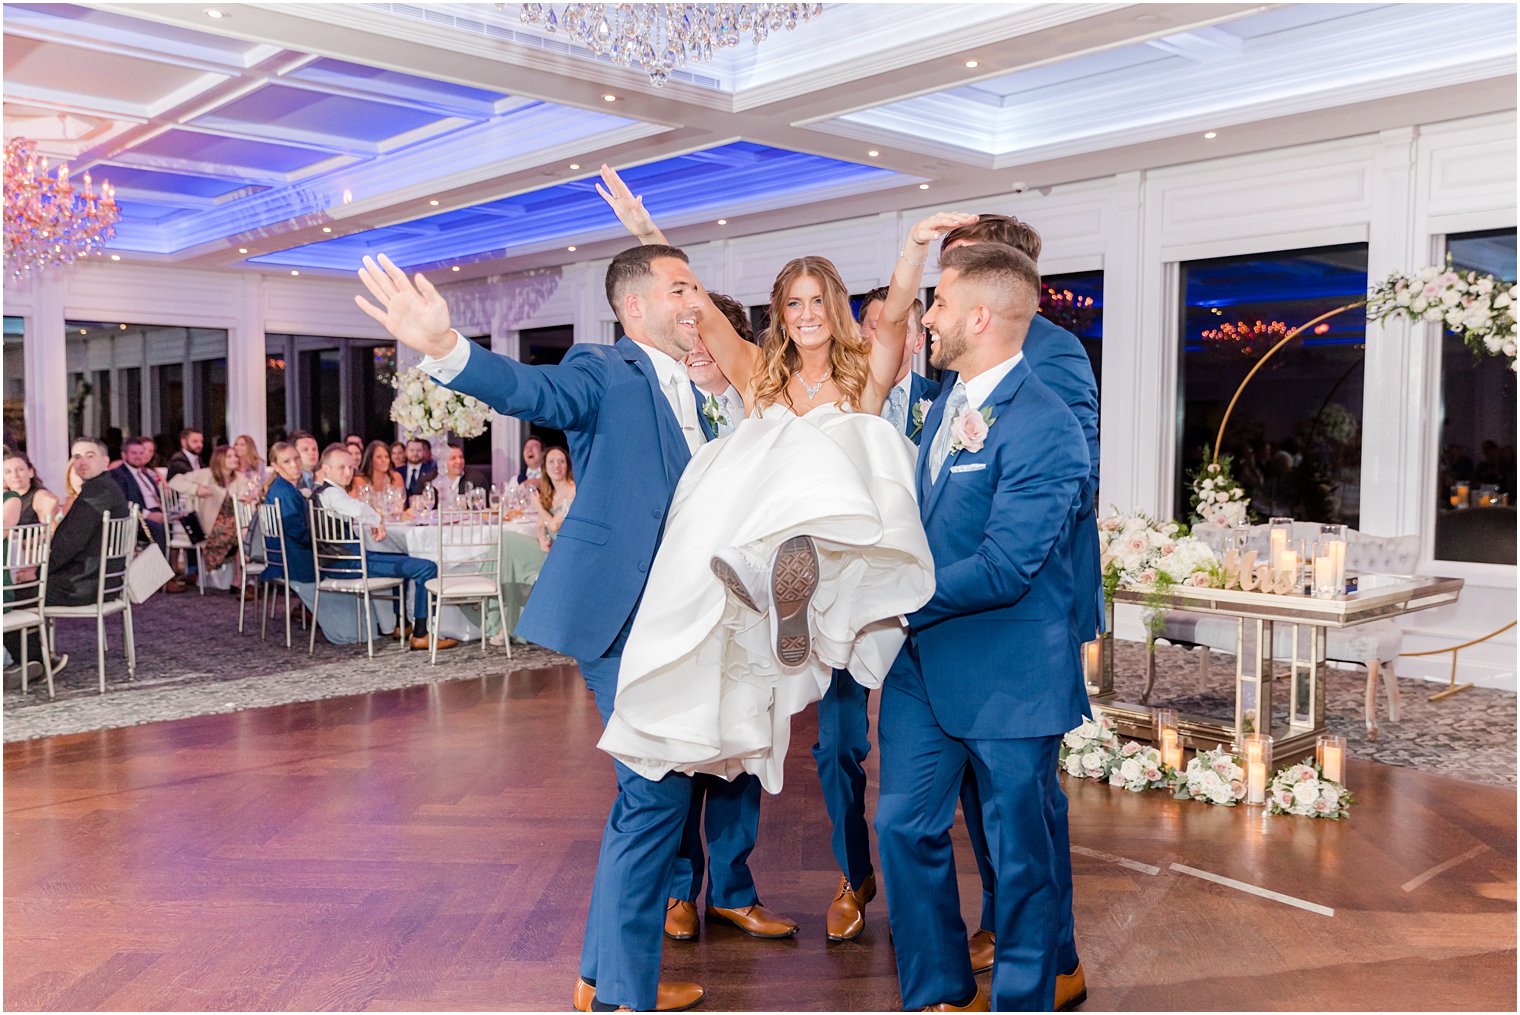 groomsmen lift up bride on dance floor